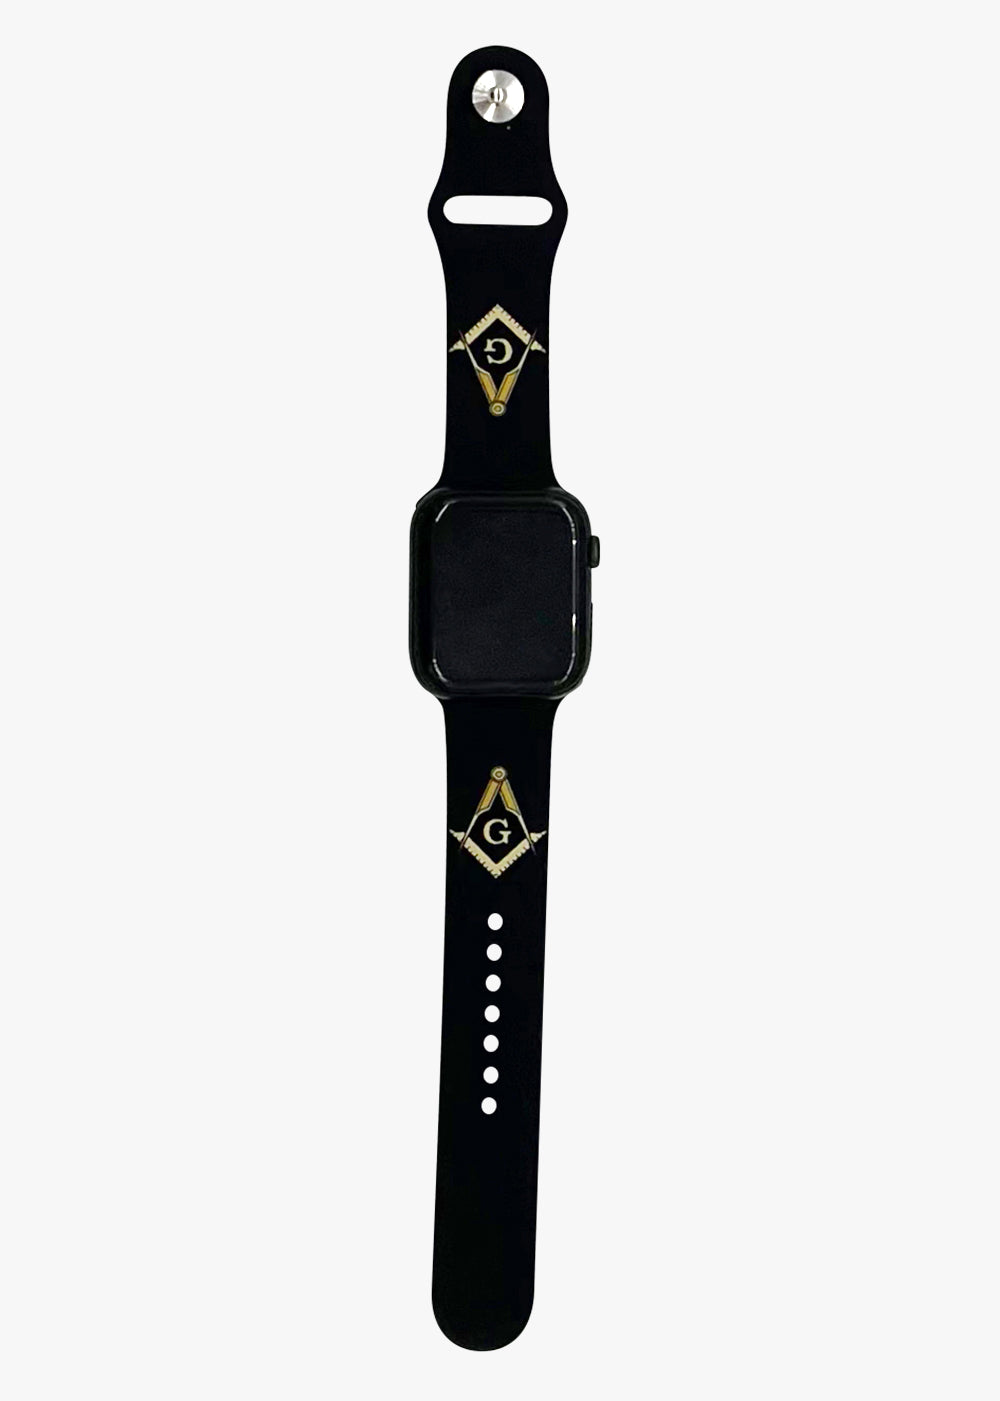  Freemasonry Masonic Masonry Stylish PU Wristbands Strap  Compatible with IWatch Watch Band 42mm/44mm : Cell Phones & Accessories